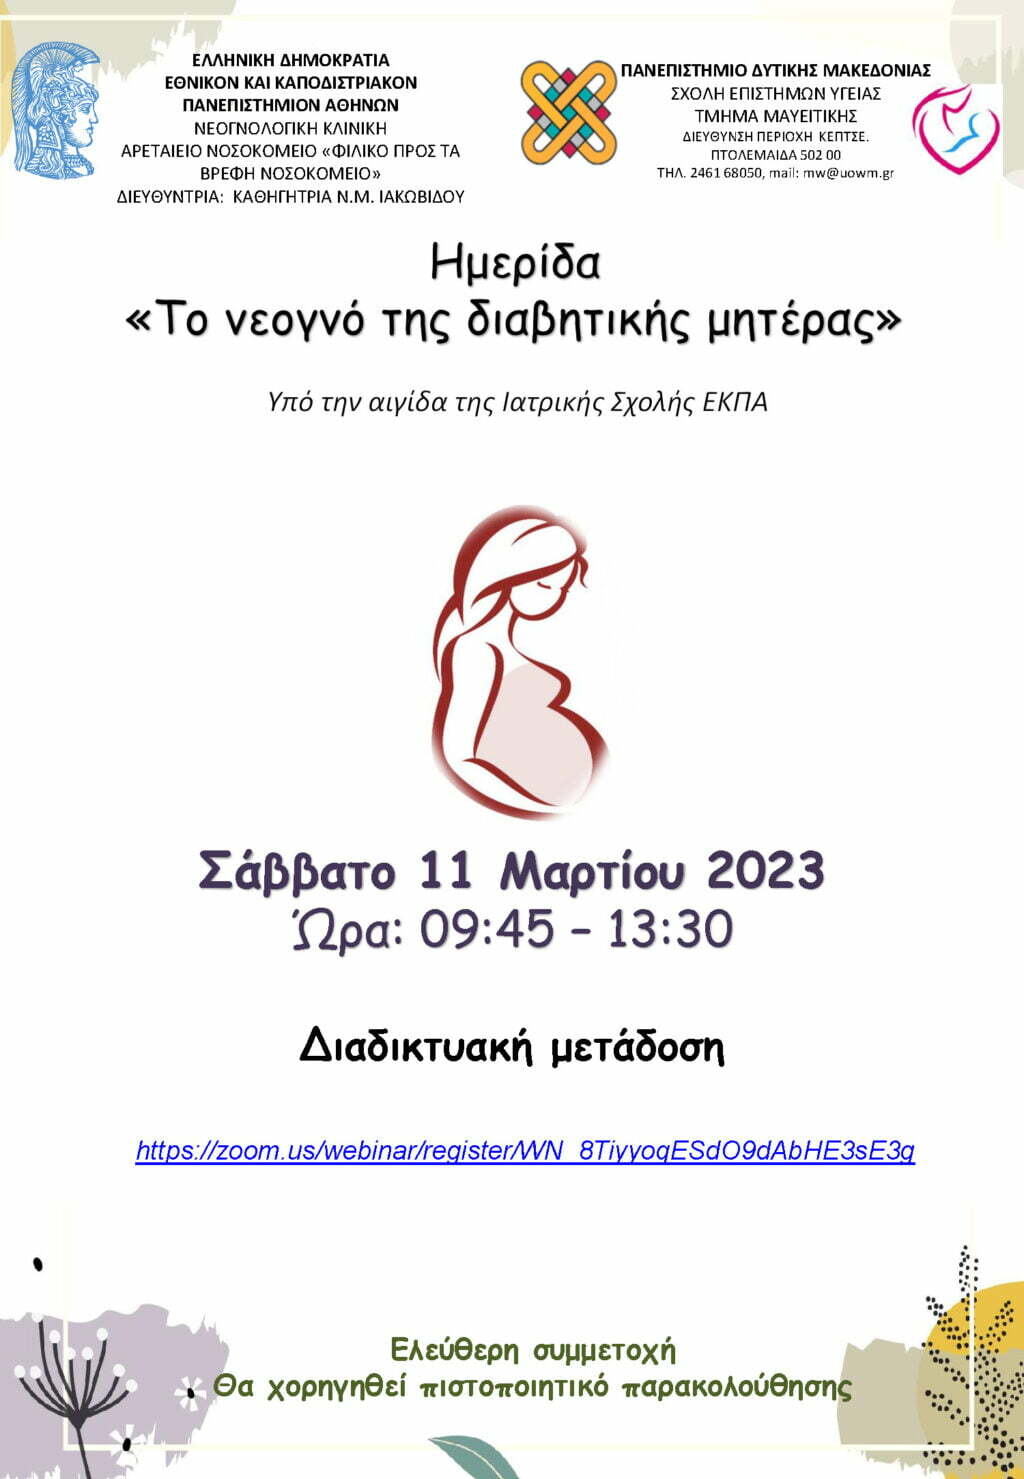 Webinar με τίτλο «Το νεογνό της διαβητικής μητέρας» που θα πραγματοποιηθεί το Σάββατο 11/03/2023 διαδικτυακά, ώρα 09:45-13:30